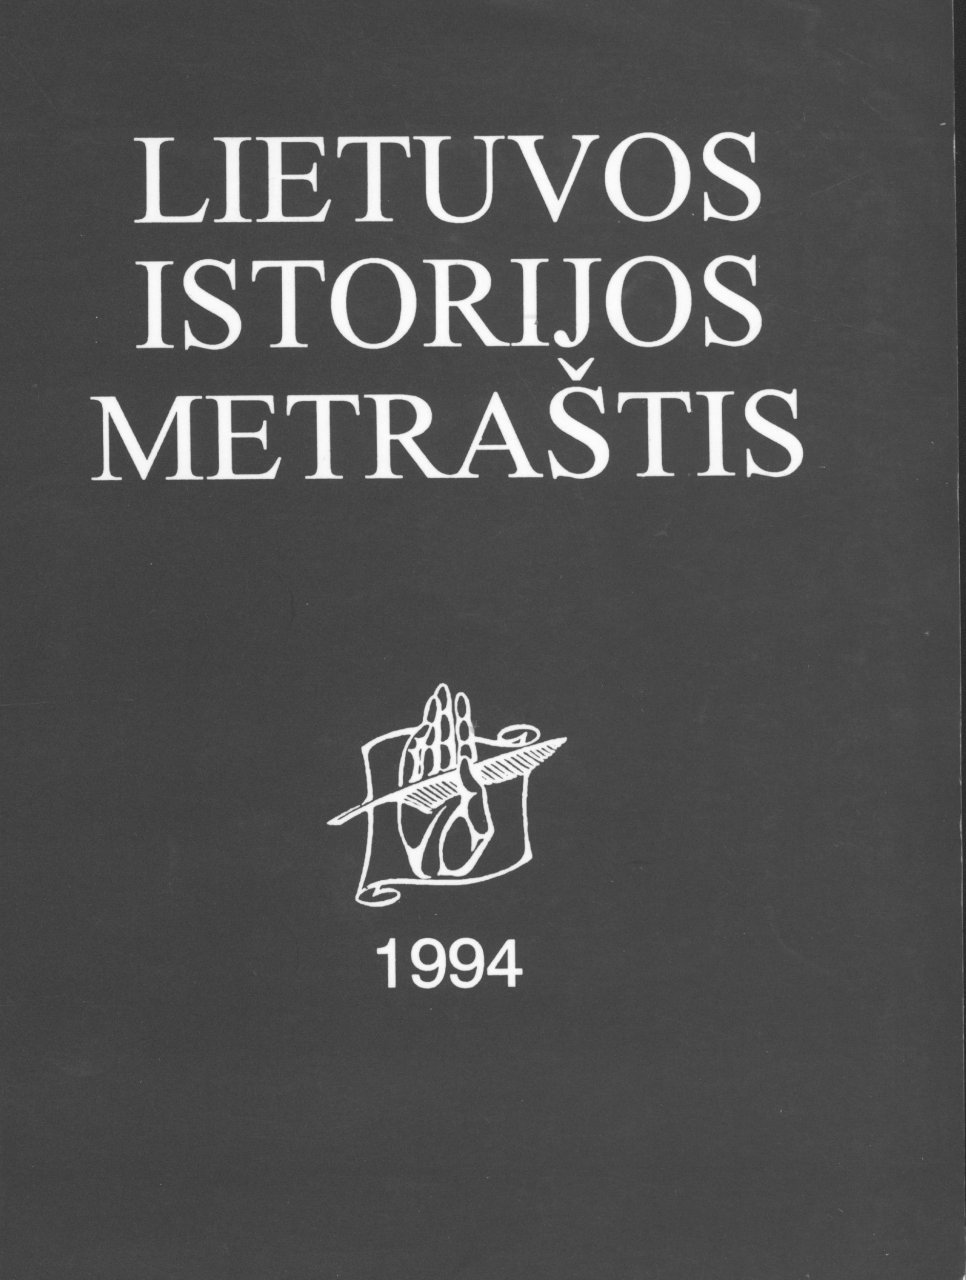 Lietuvos istorijos metraštis 1994 metai 